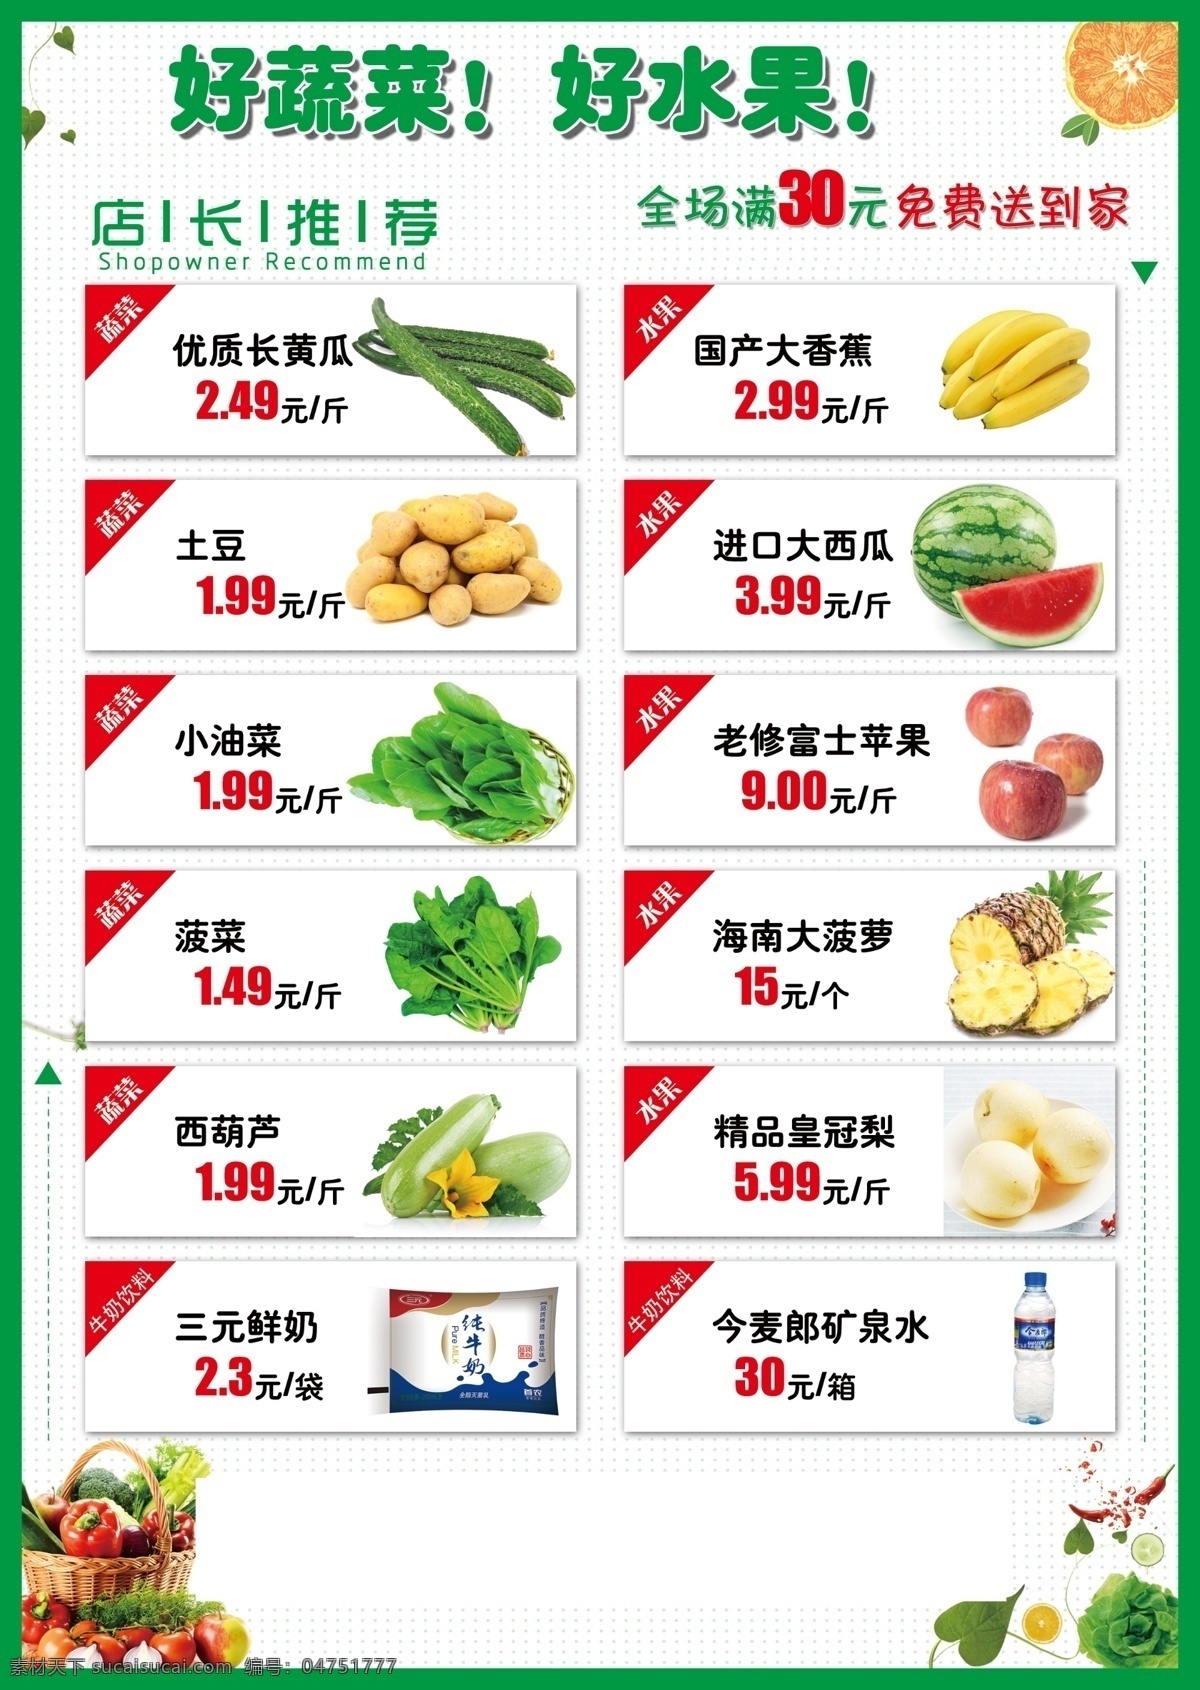 蔬菜水果 配送 海报 蔬菜水果配送 海报免费下载 蔬菜水果海报 蔬菜水果宣传 蔬菜 水果 分层